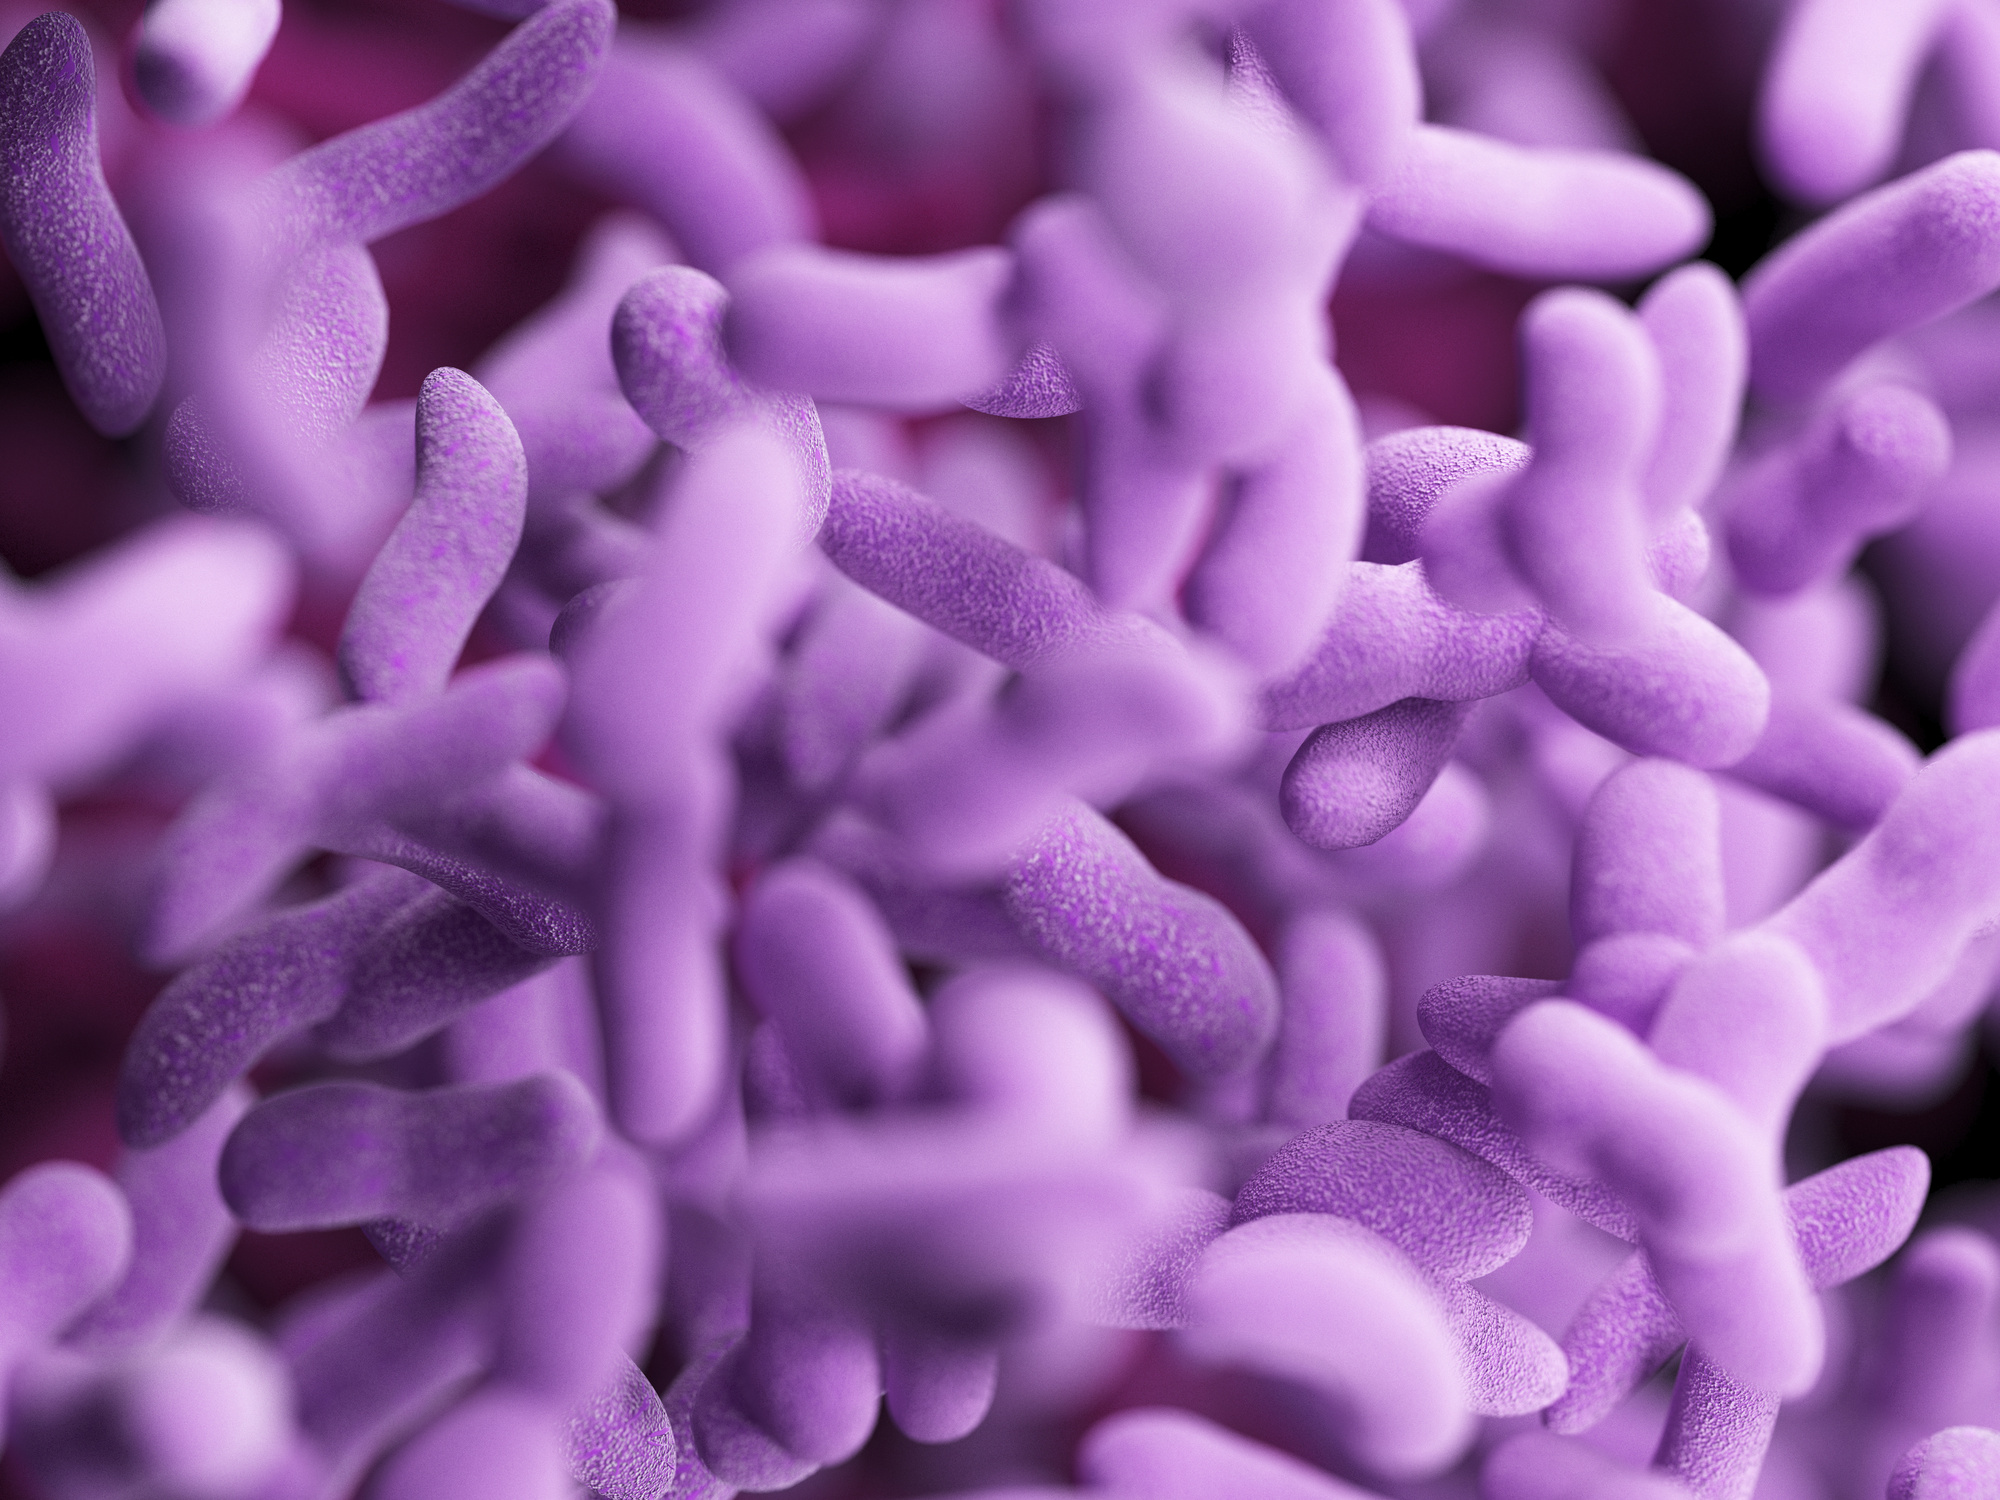 La ciencia explica por qué la penicilina hace que estallen las células bacterianas